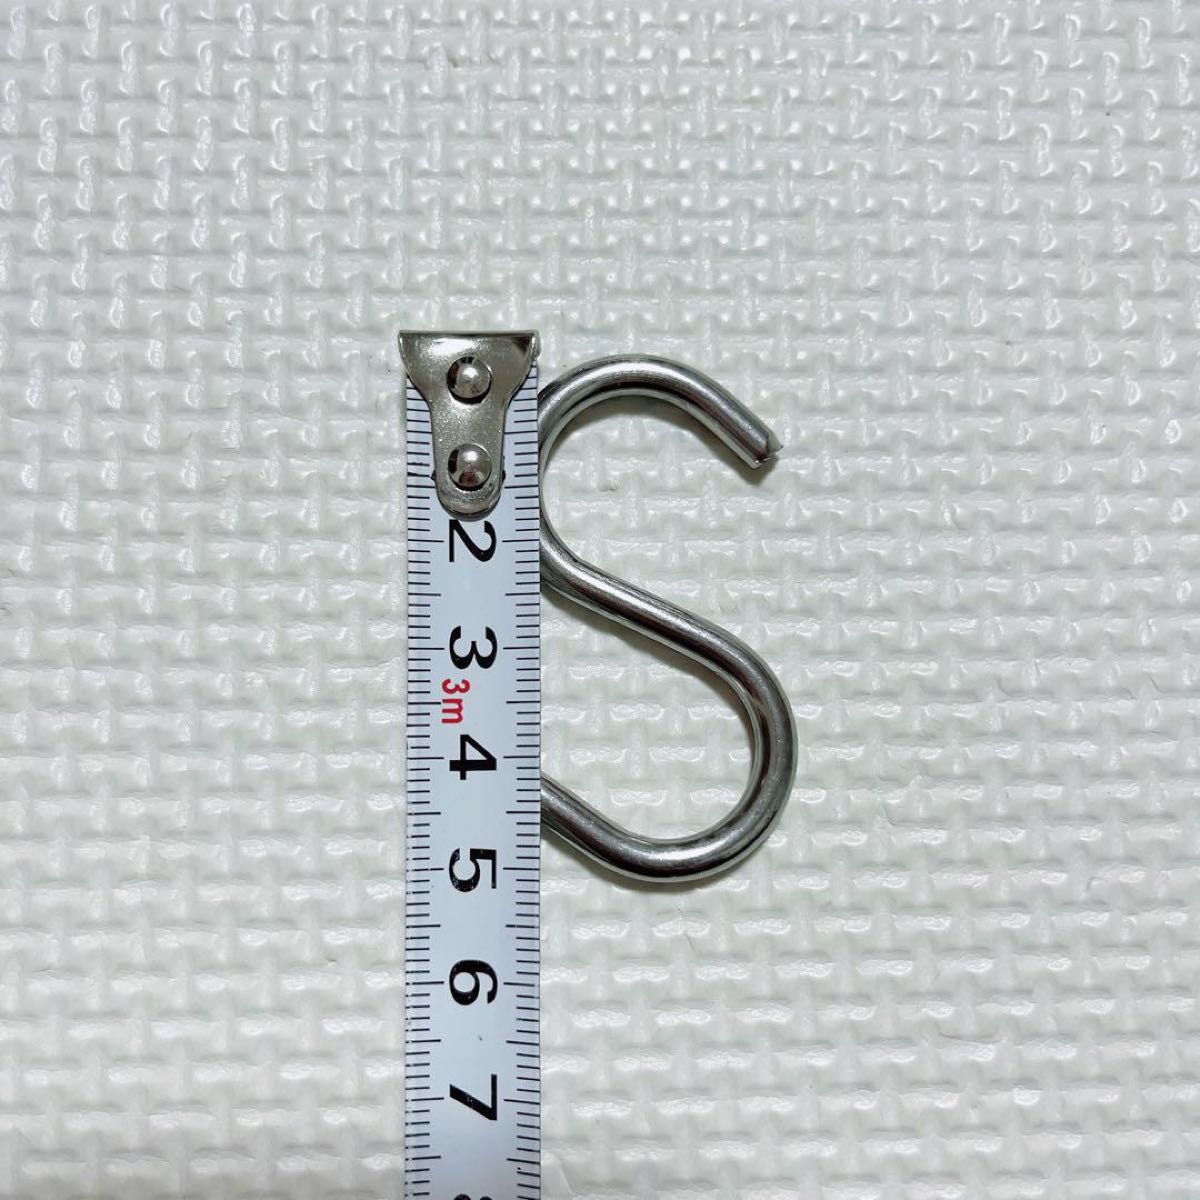 S字フック 50mm ステンレス鋼ハンガー 24個セット S字型フック